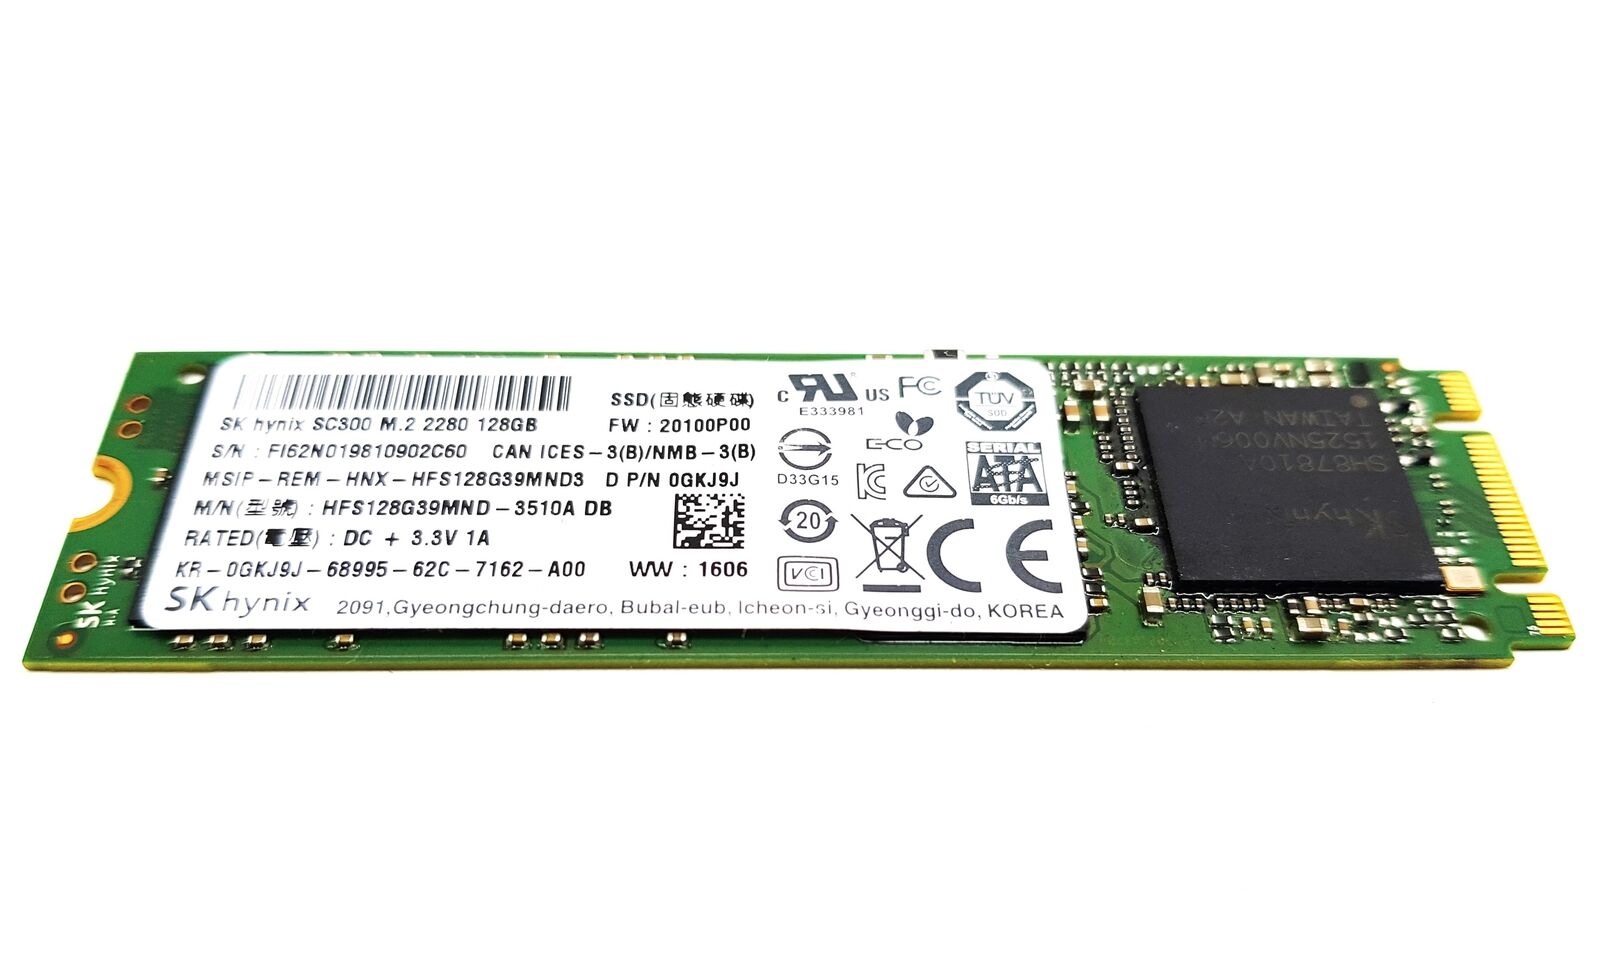 Sk Hynix SC300 128GB M.2 SSD Solid State Drive HFS128G39MND-3510A DB CN-0GKJ9J